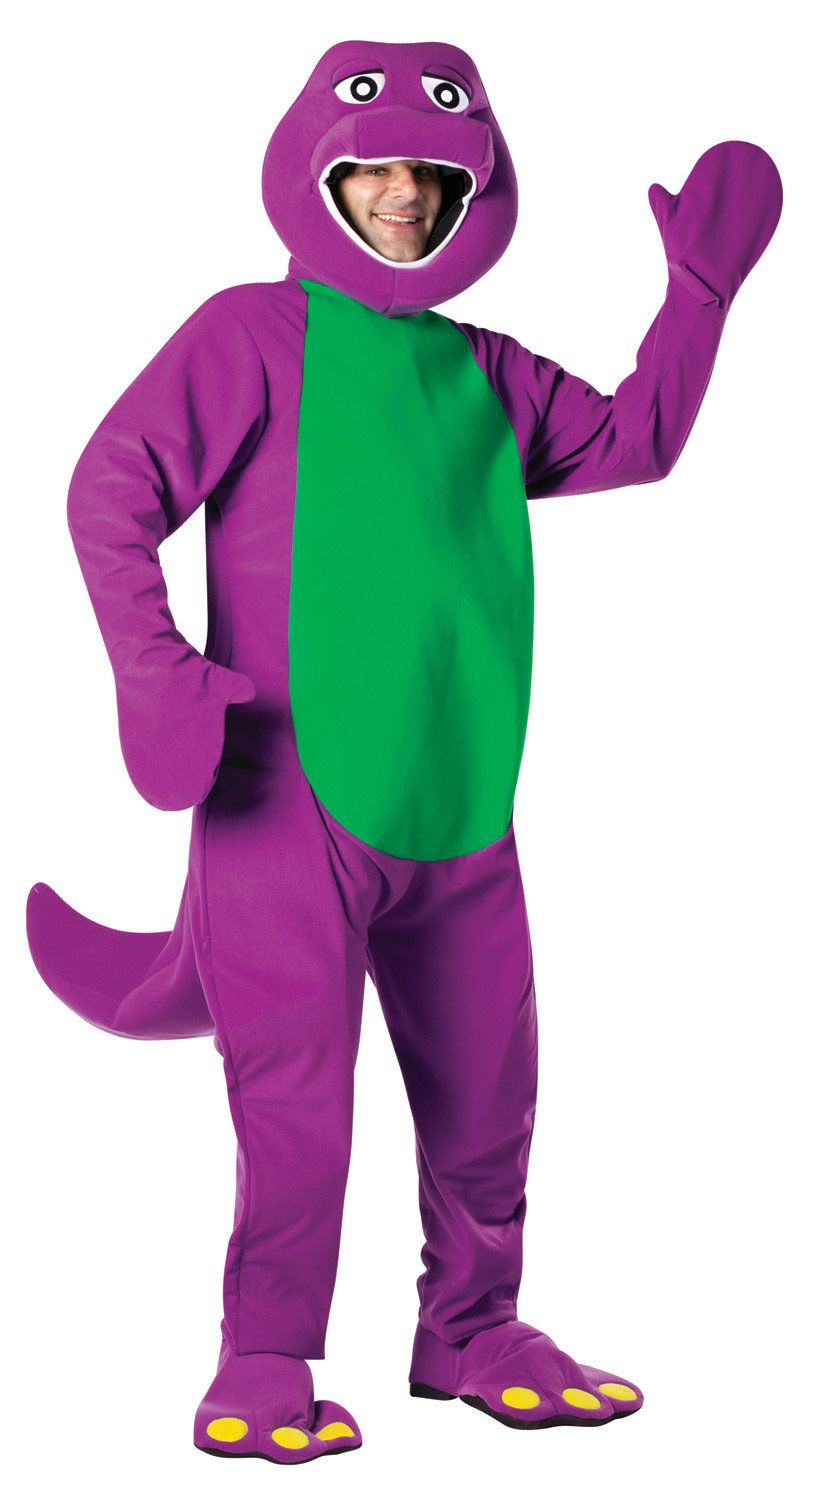 Adult barney costume dinosaur purple